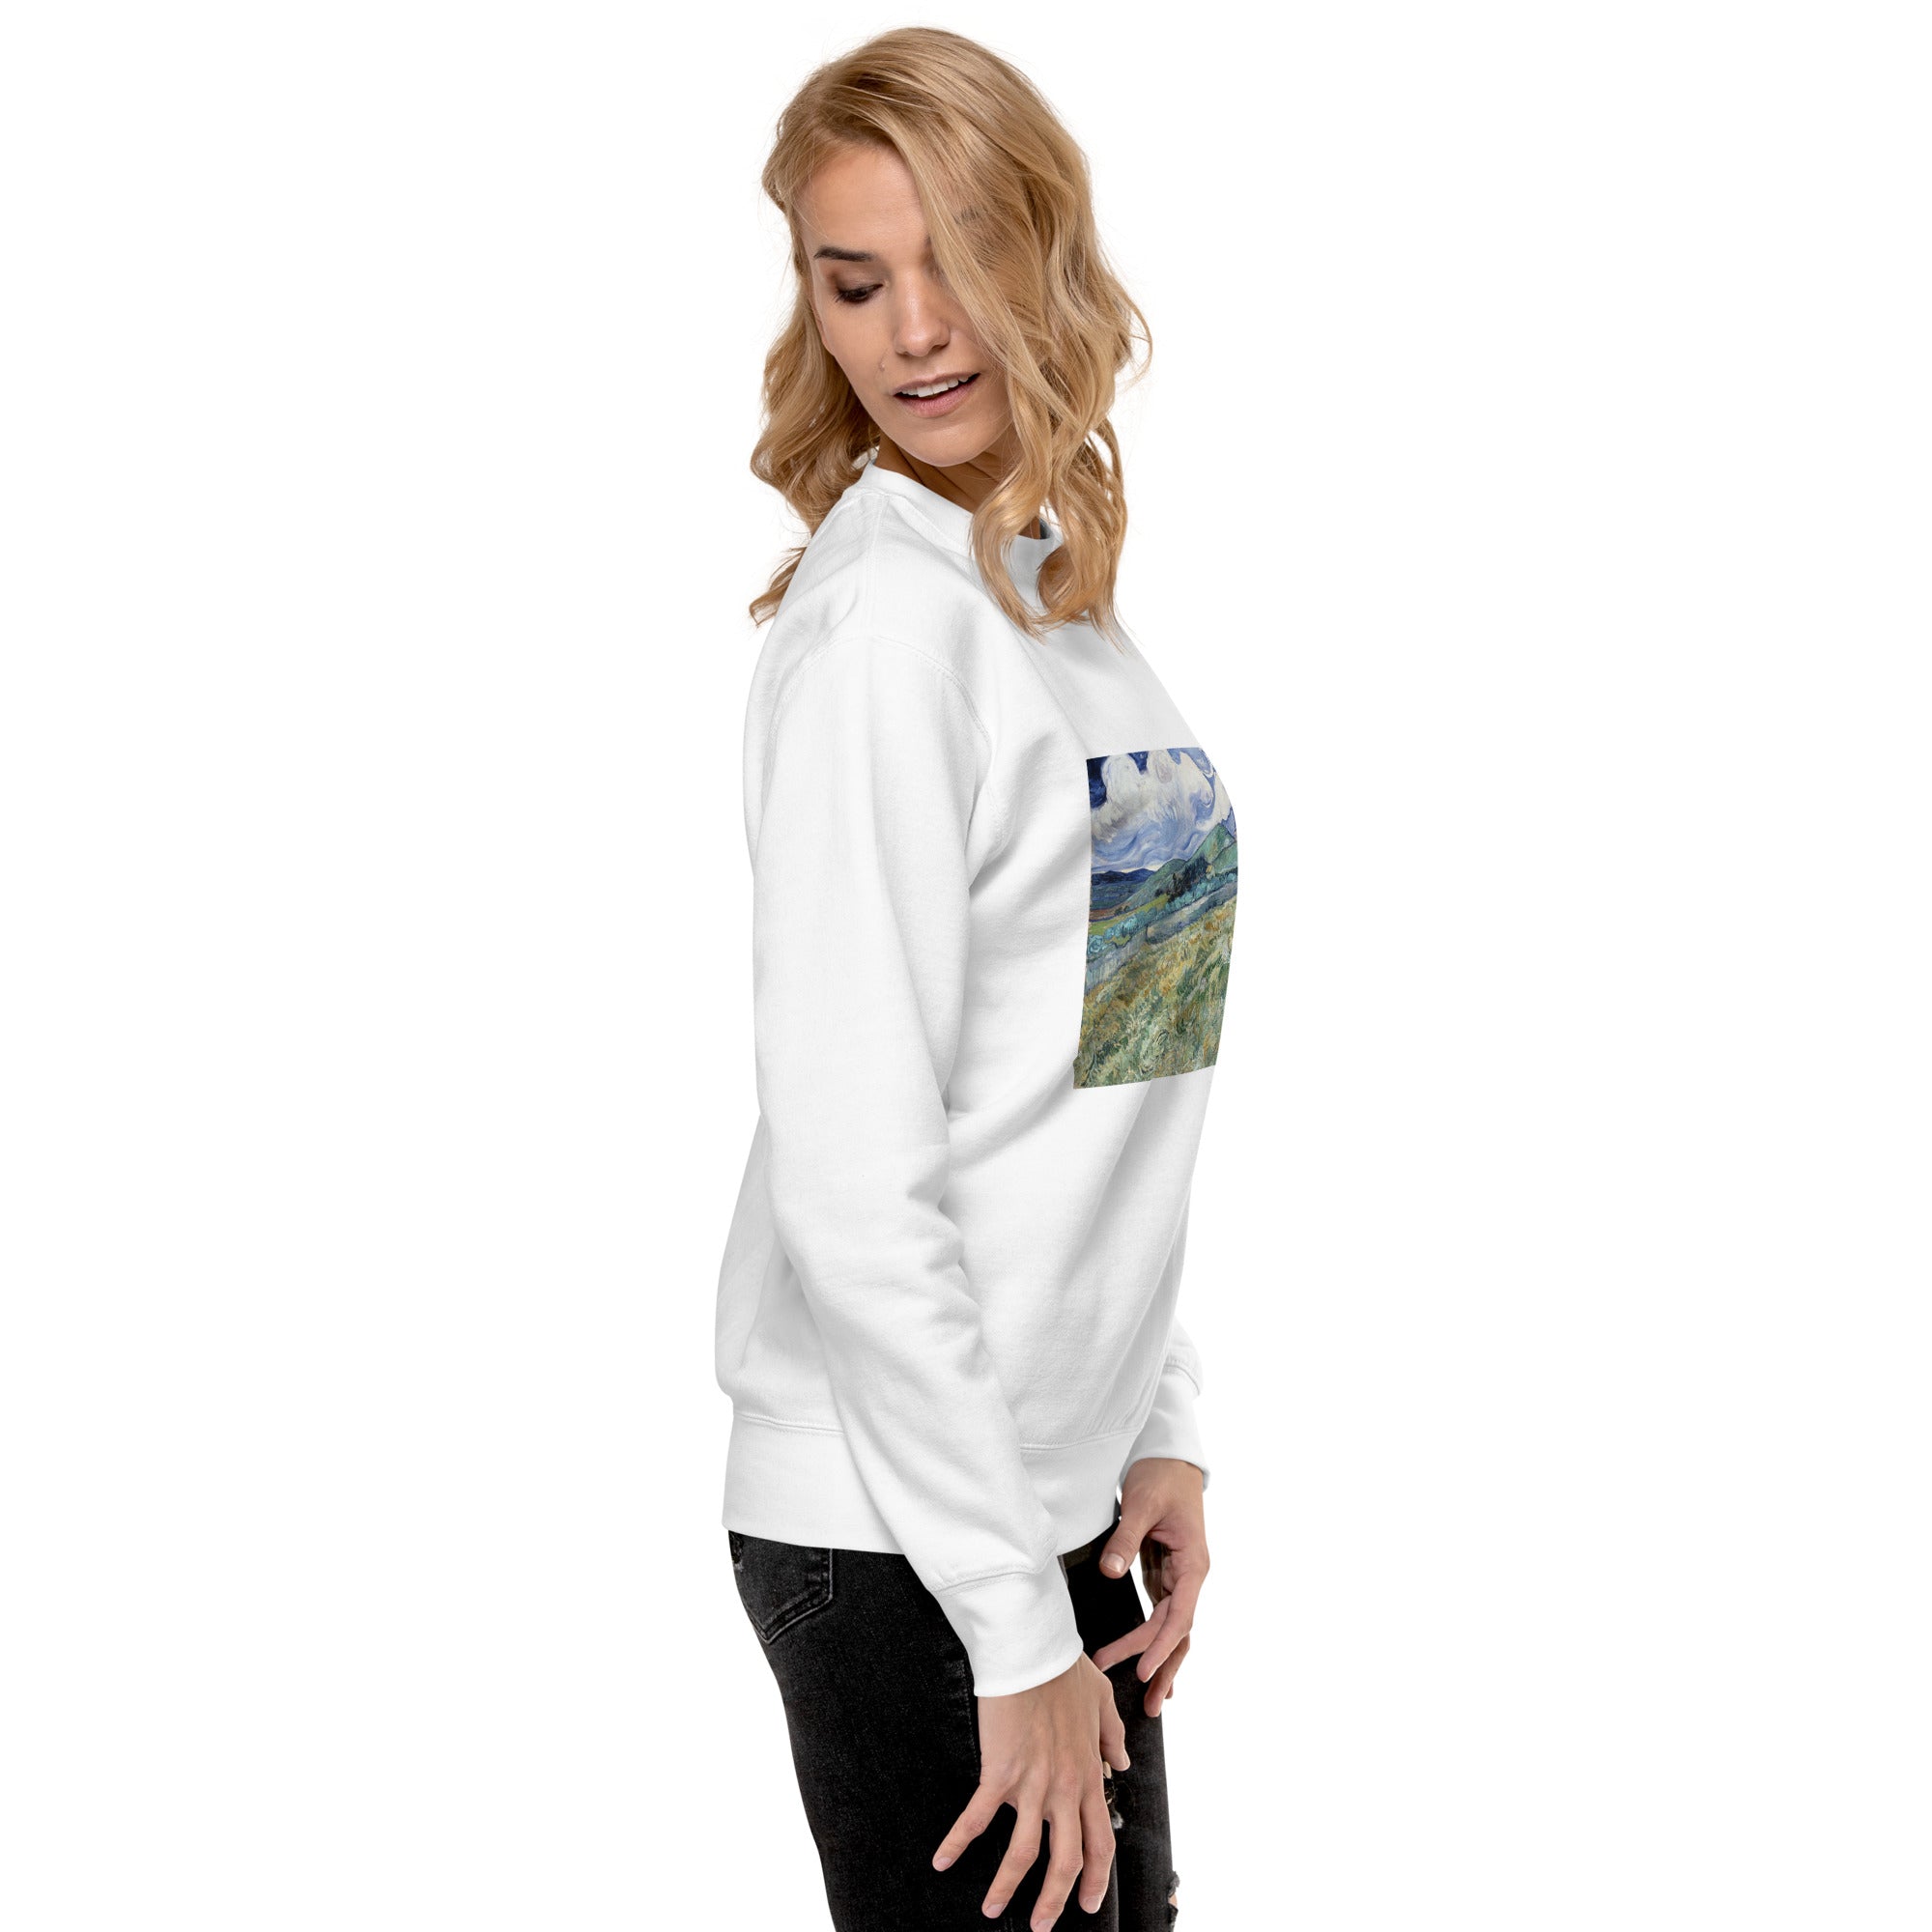 Vincent van Gogh 'Landscape from Saint-Rémy' Famous Painting Sweatshirt | Unisex Premium Sweatshirt